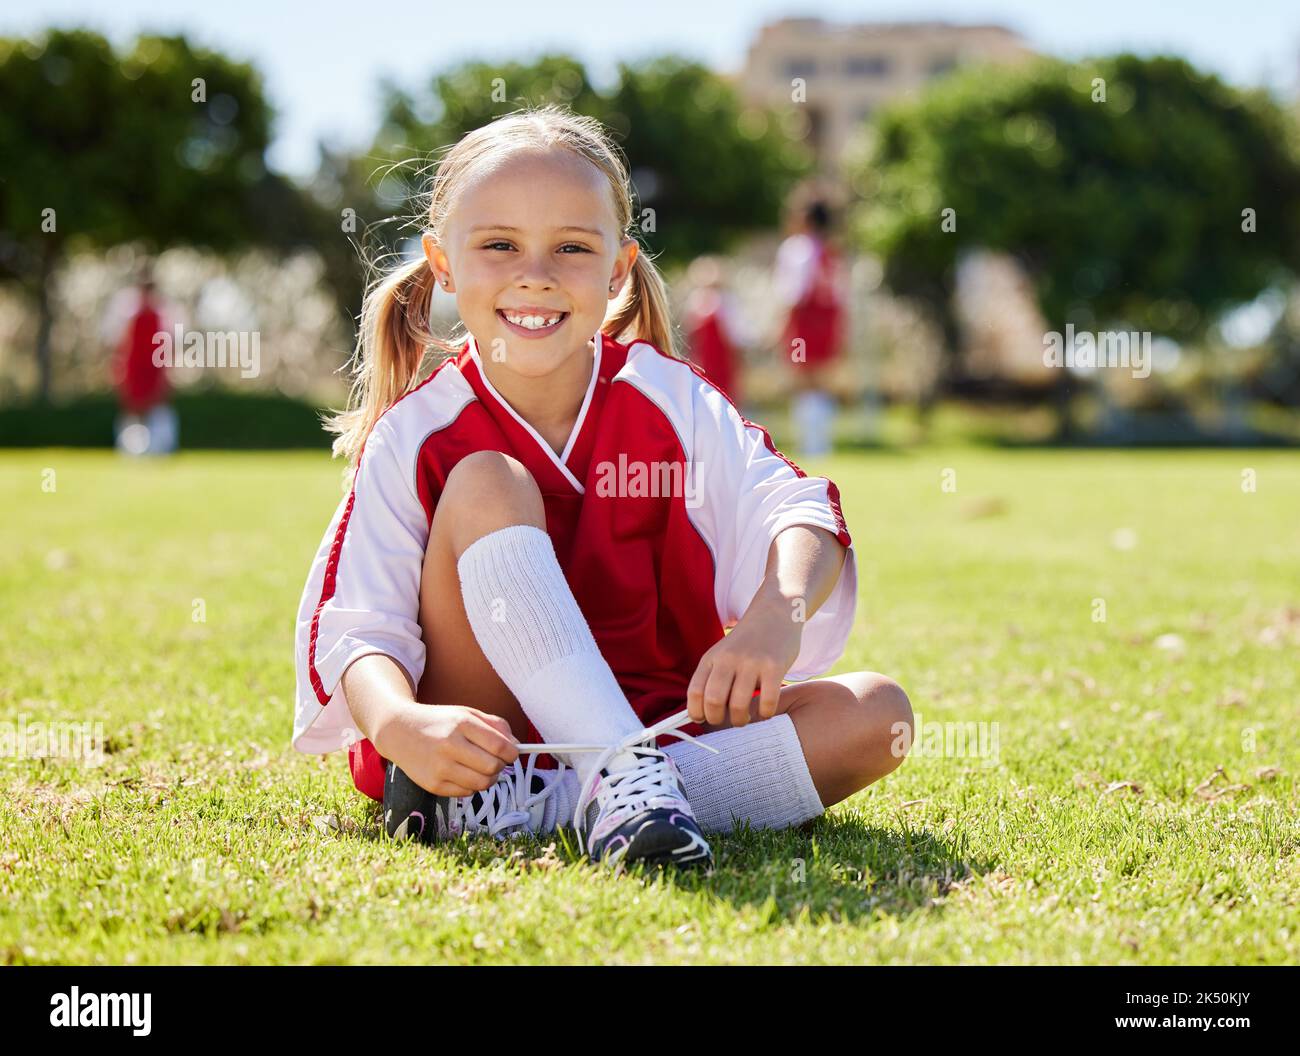 Girl Soccer Player Straightens Leggings In Football Boots, Sitting